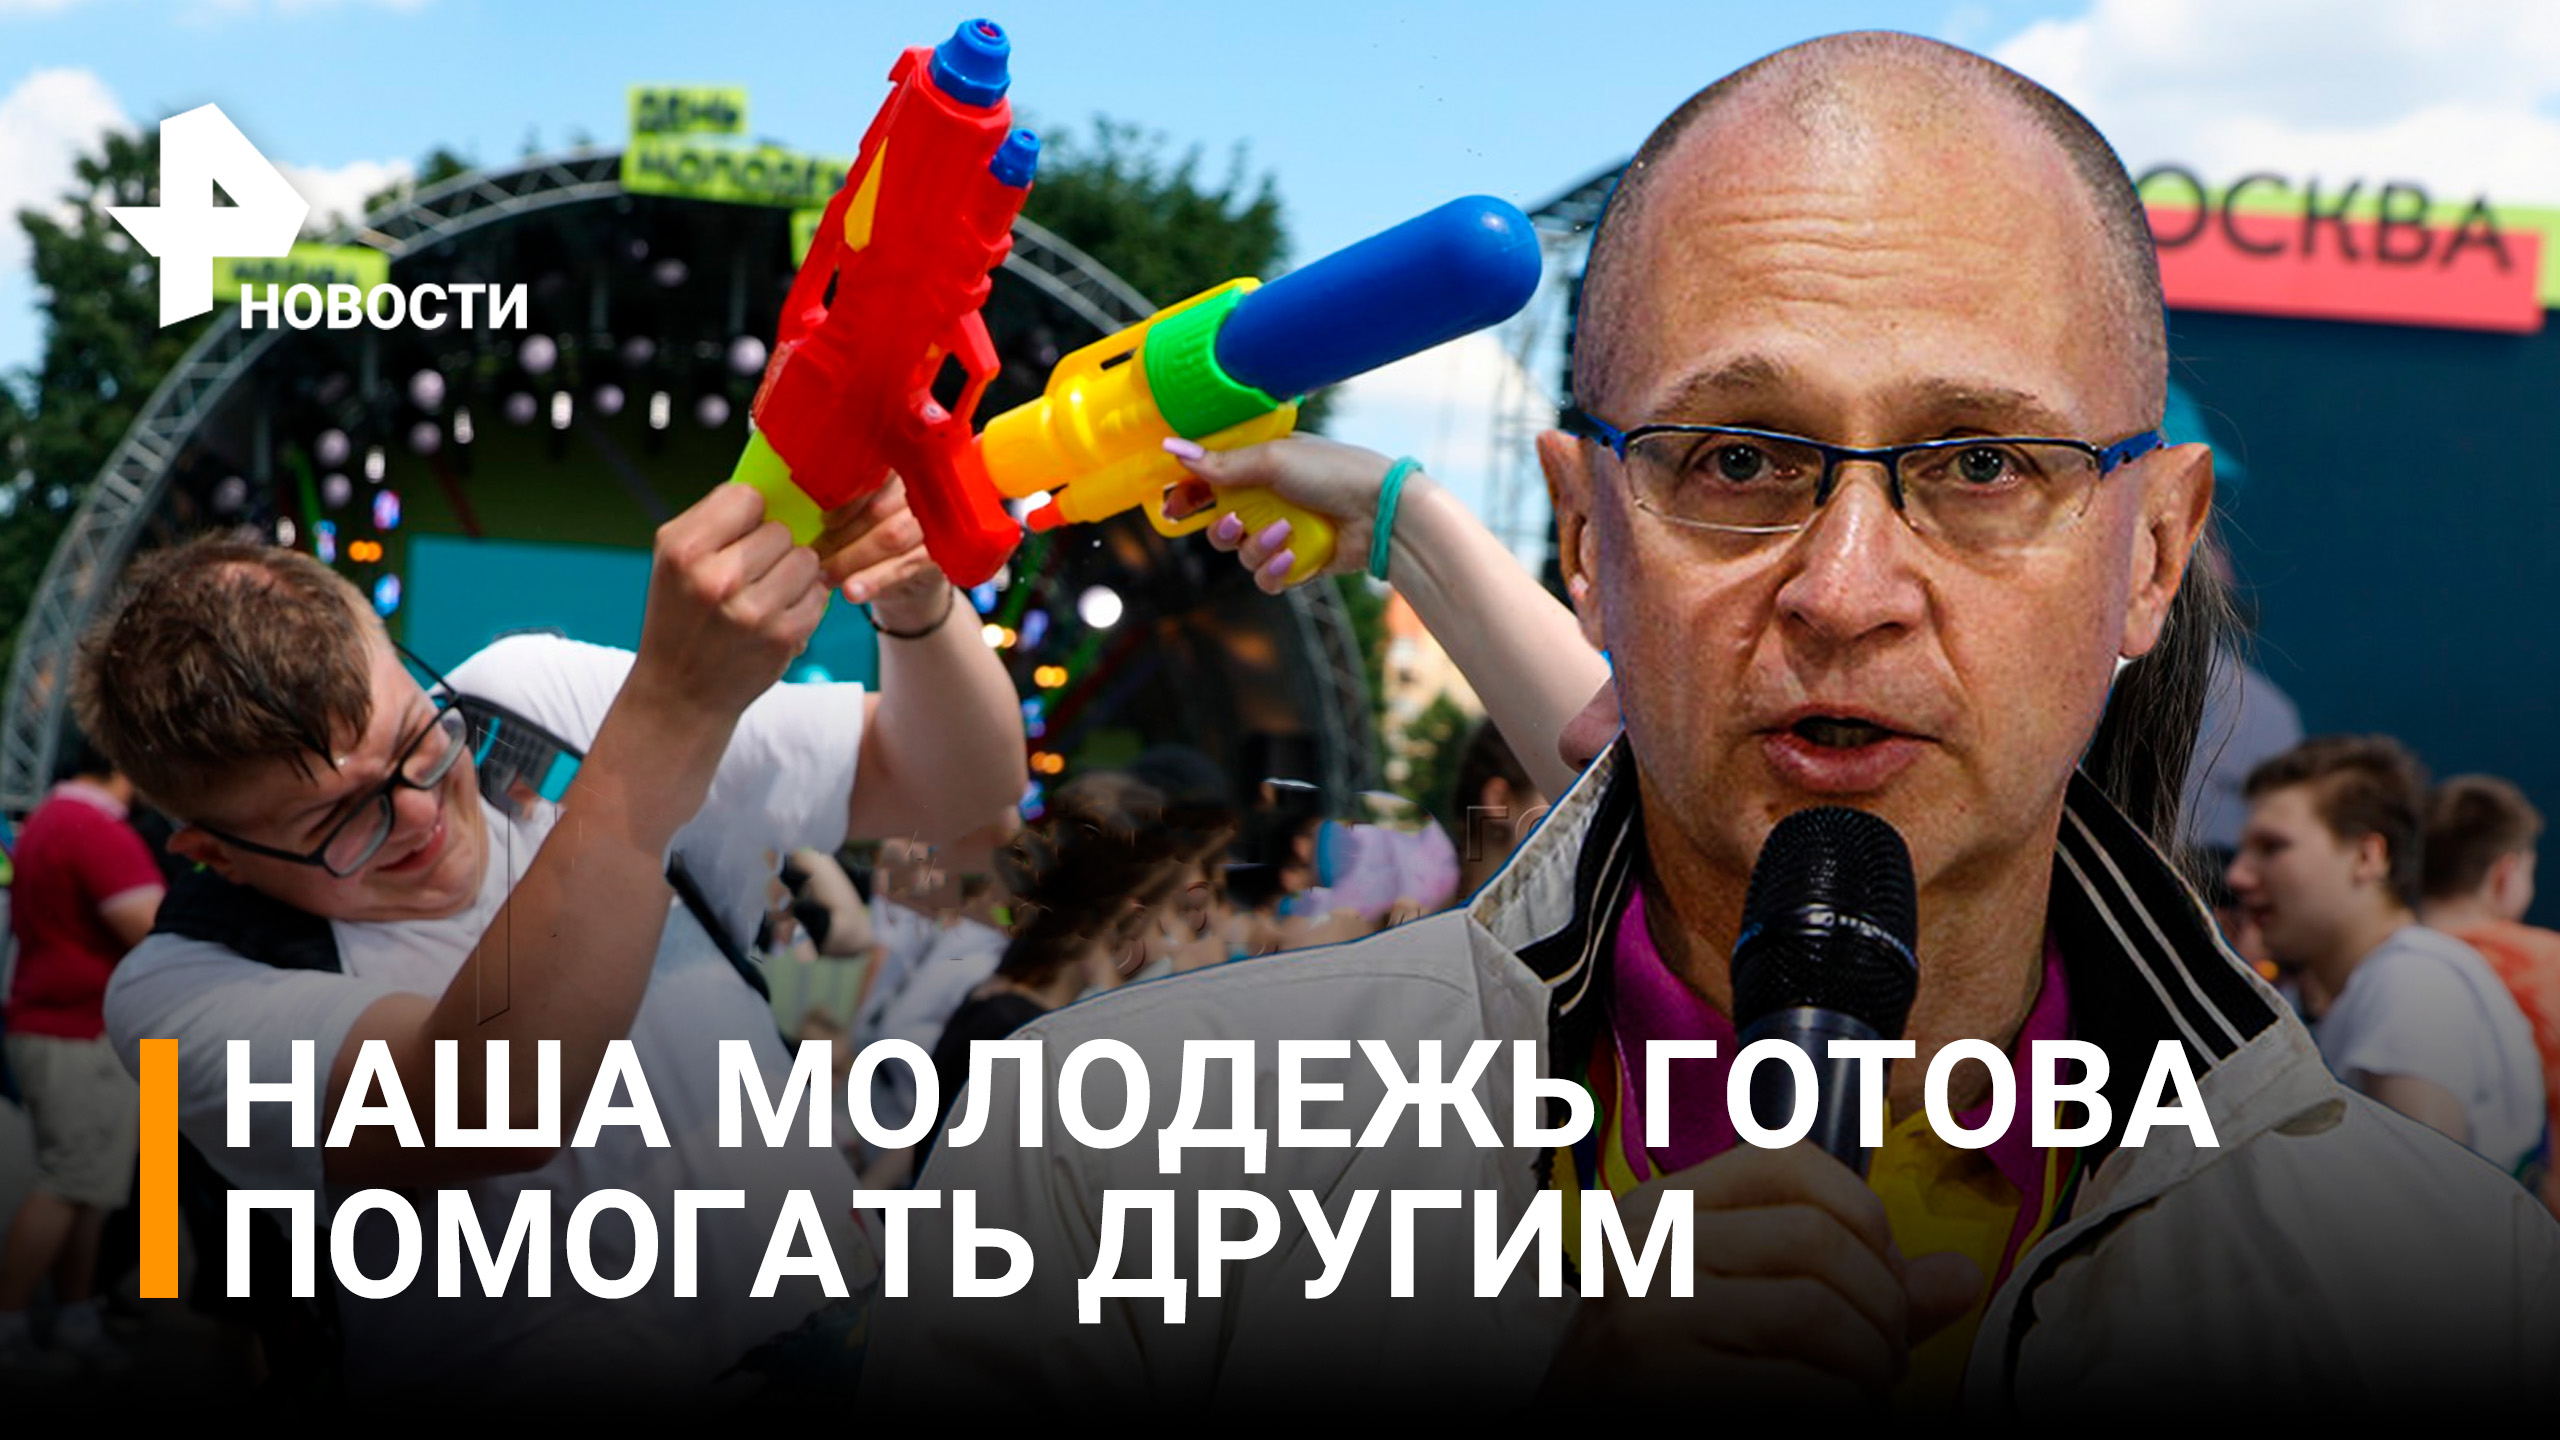 Парк "Музеон" стал одной из площадок дня молодежи / РЕН Новости